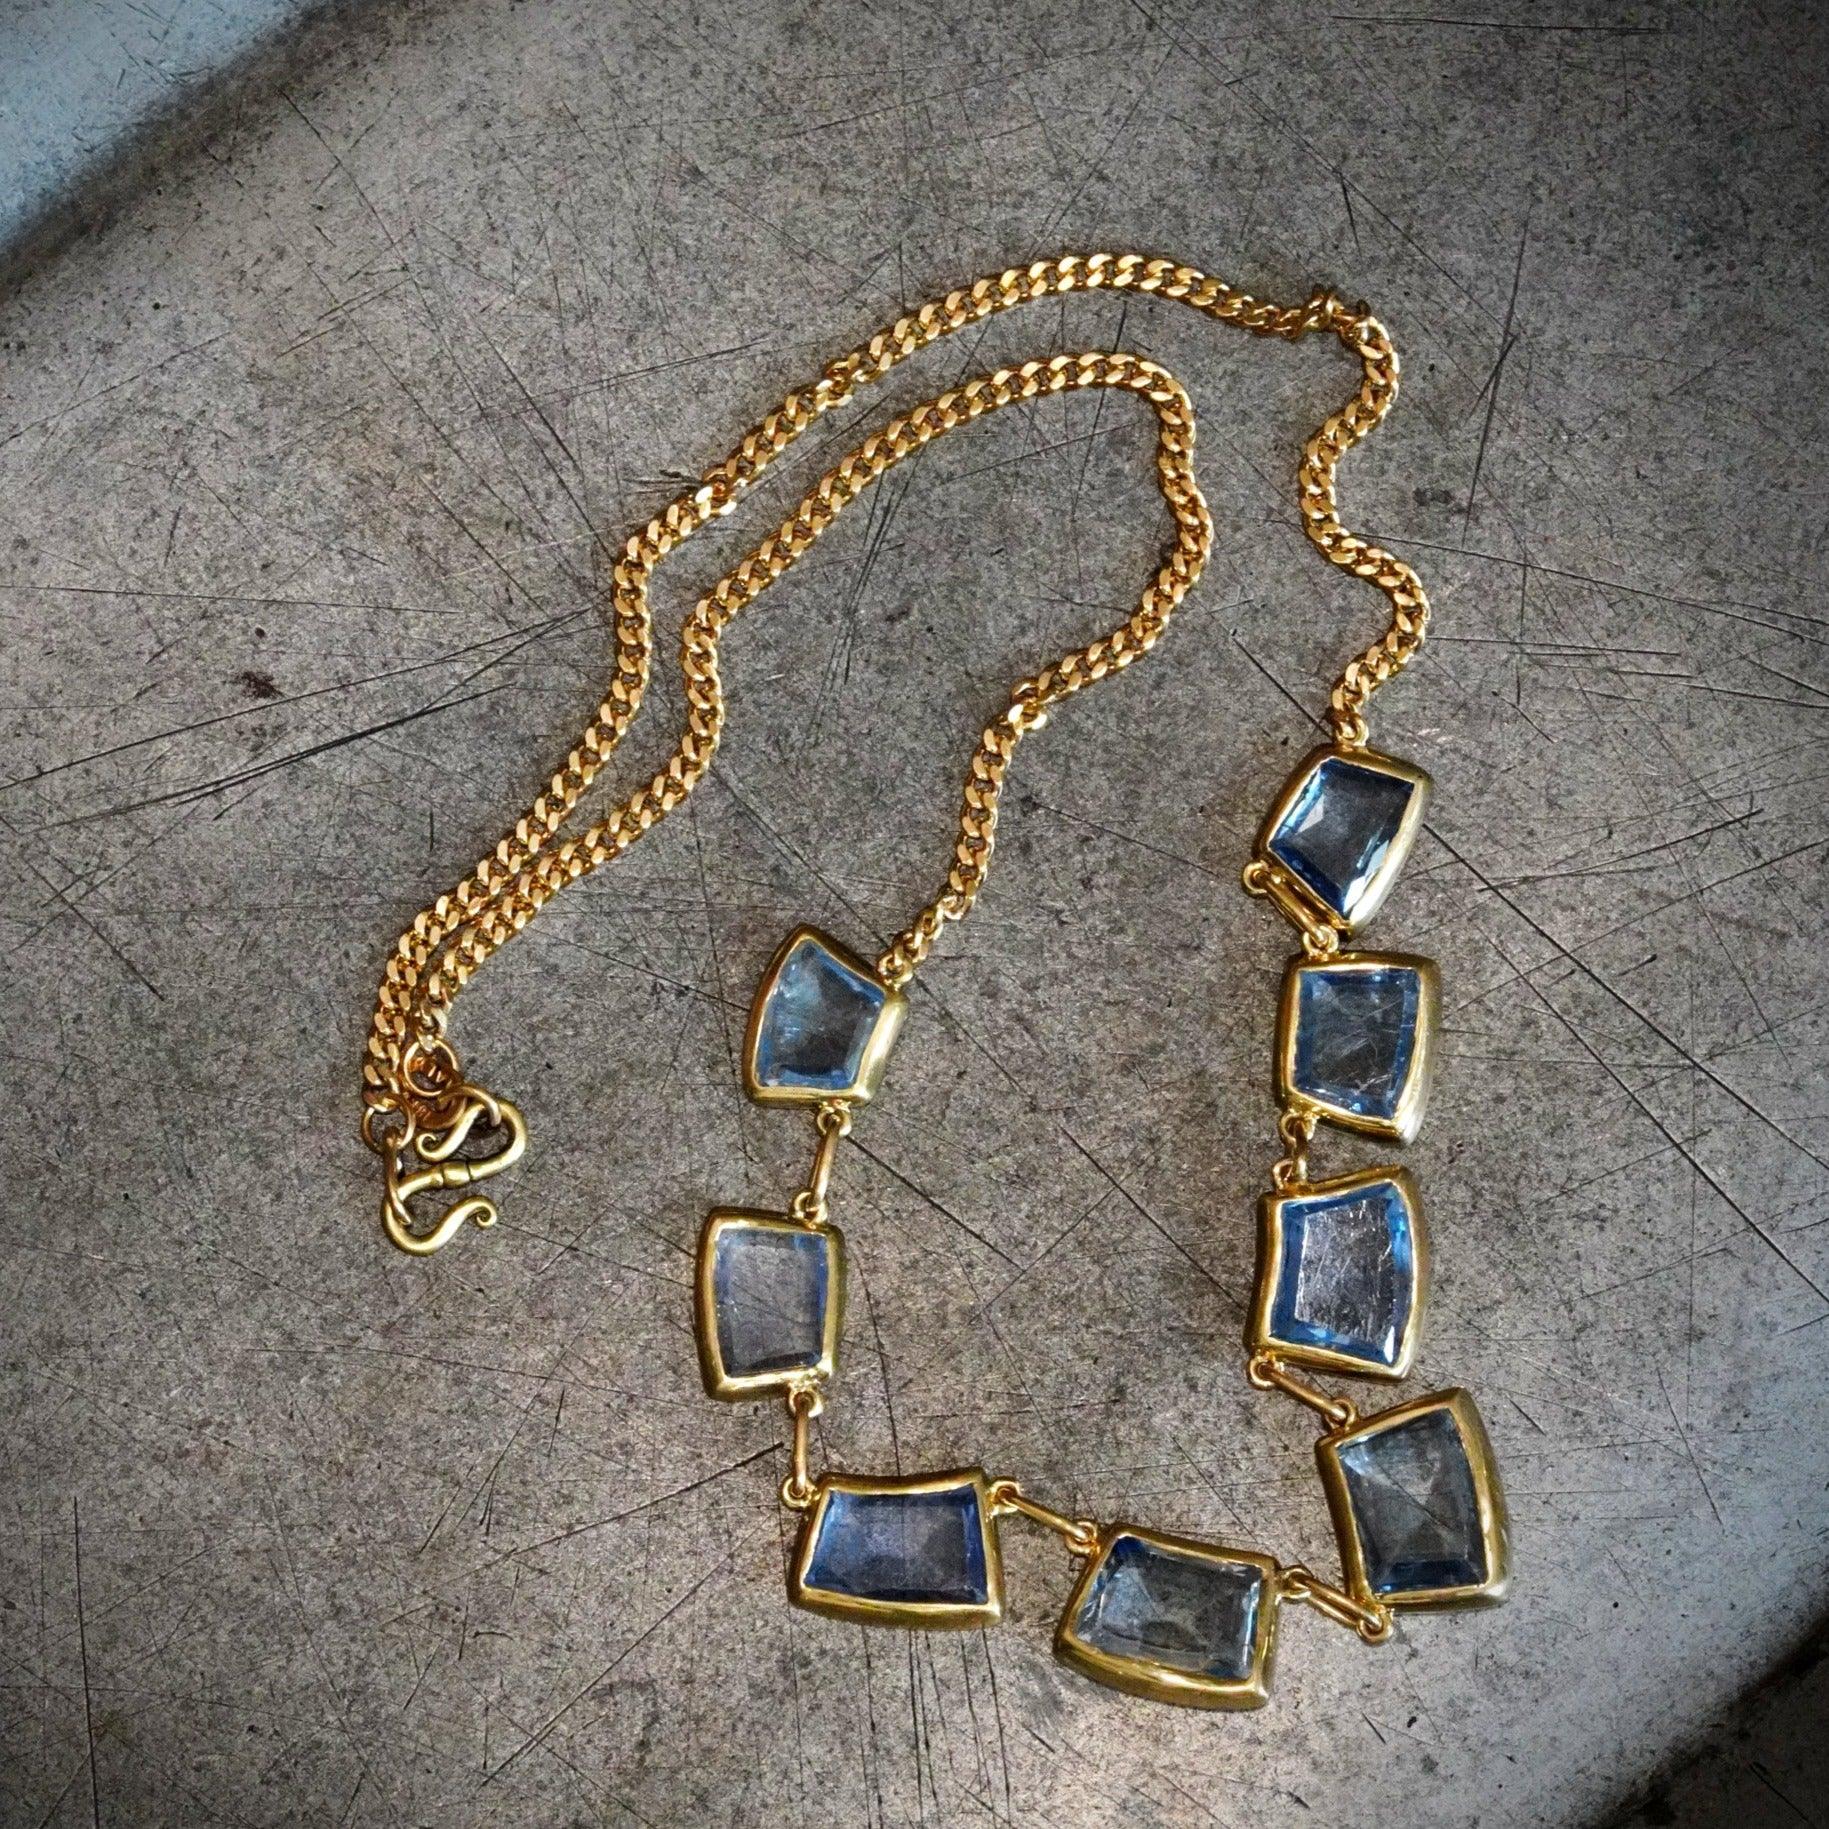 Luxury jewelry featuring Eternal Embrace trapezoidal sapphire by Jogani